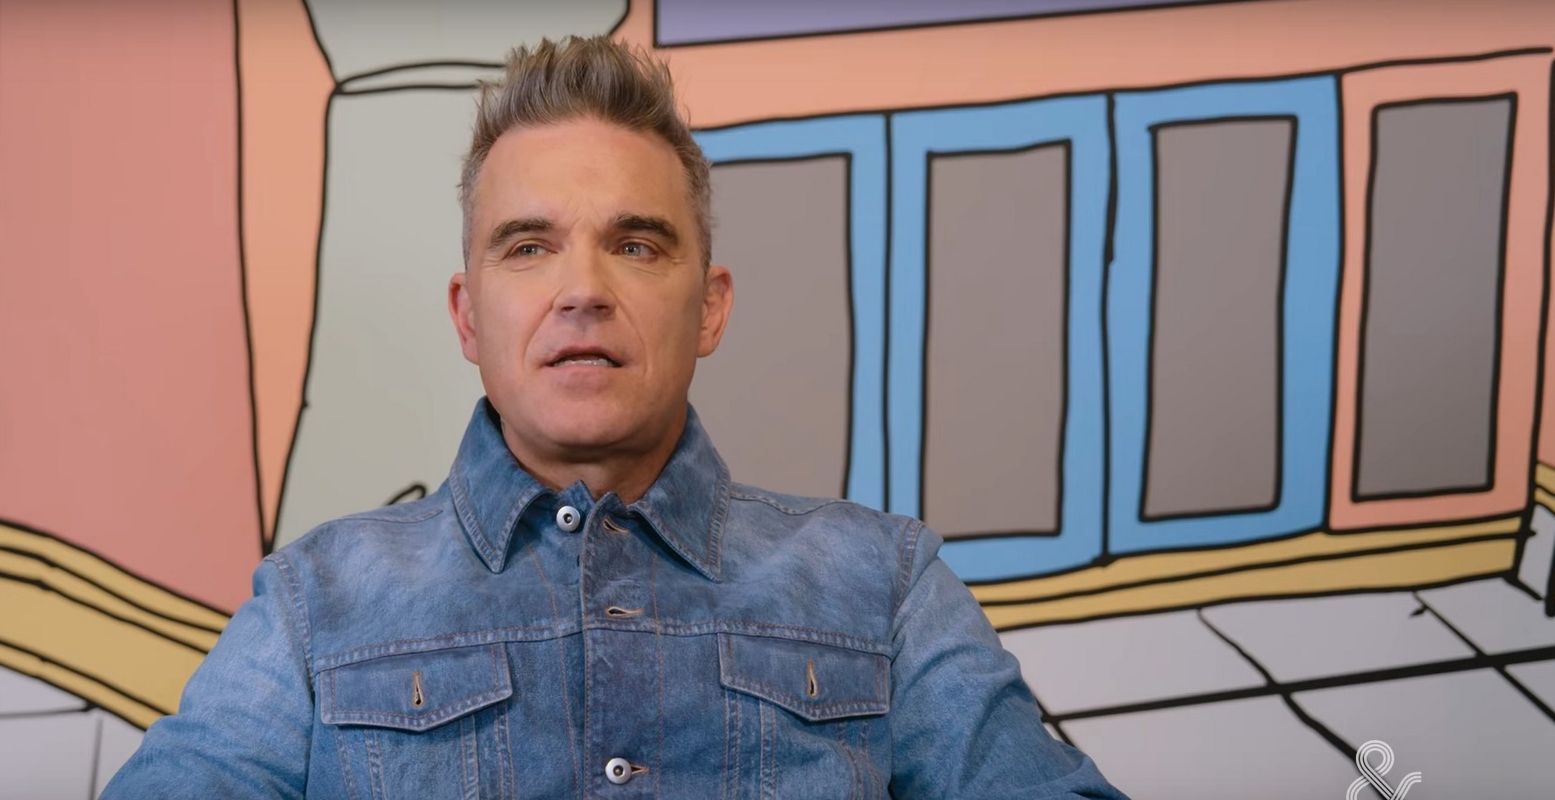 Moco Museum heeft een wereldprimeur: de eerste solo-expositie van superster Robbie Williams, hier te zien voor één van zijn kunstwerken. Foto: still uit de video van BNNVARA (zie hieronder) © BNNVARA